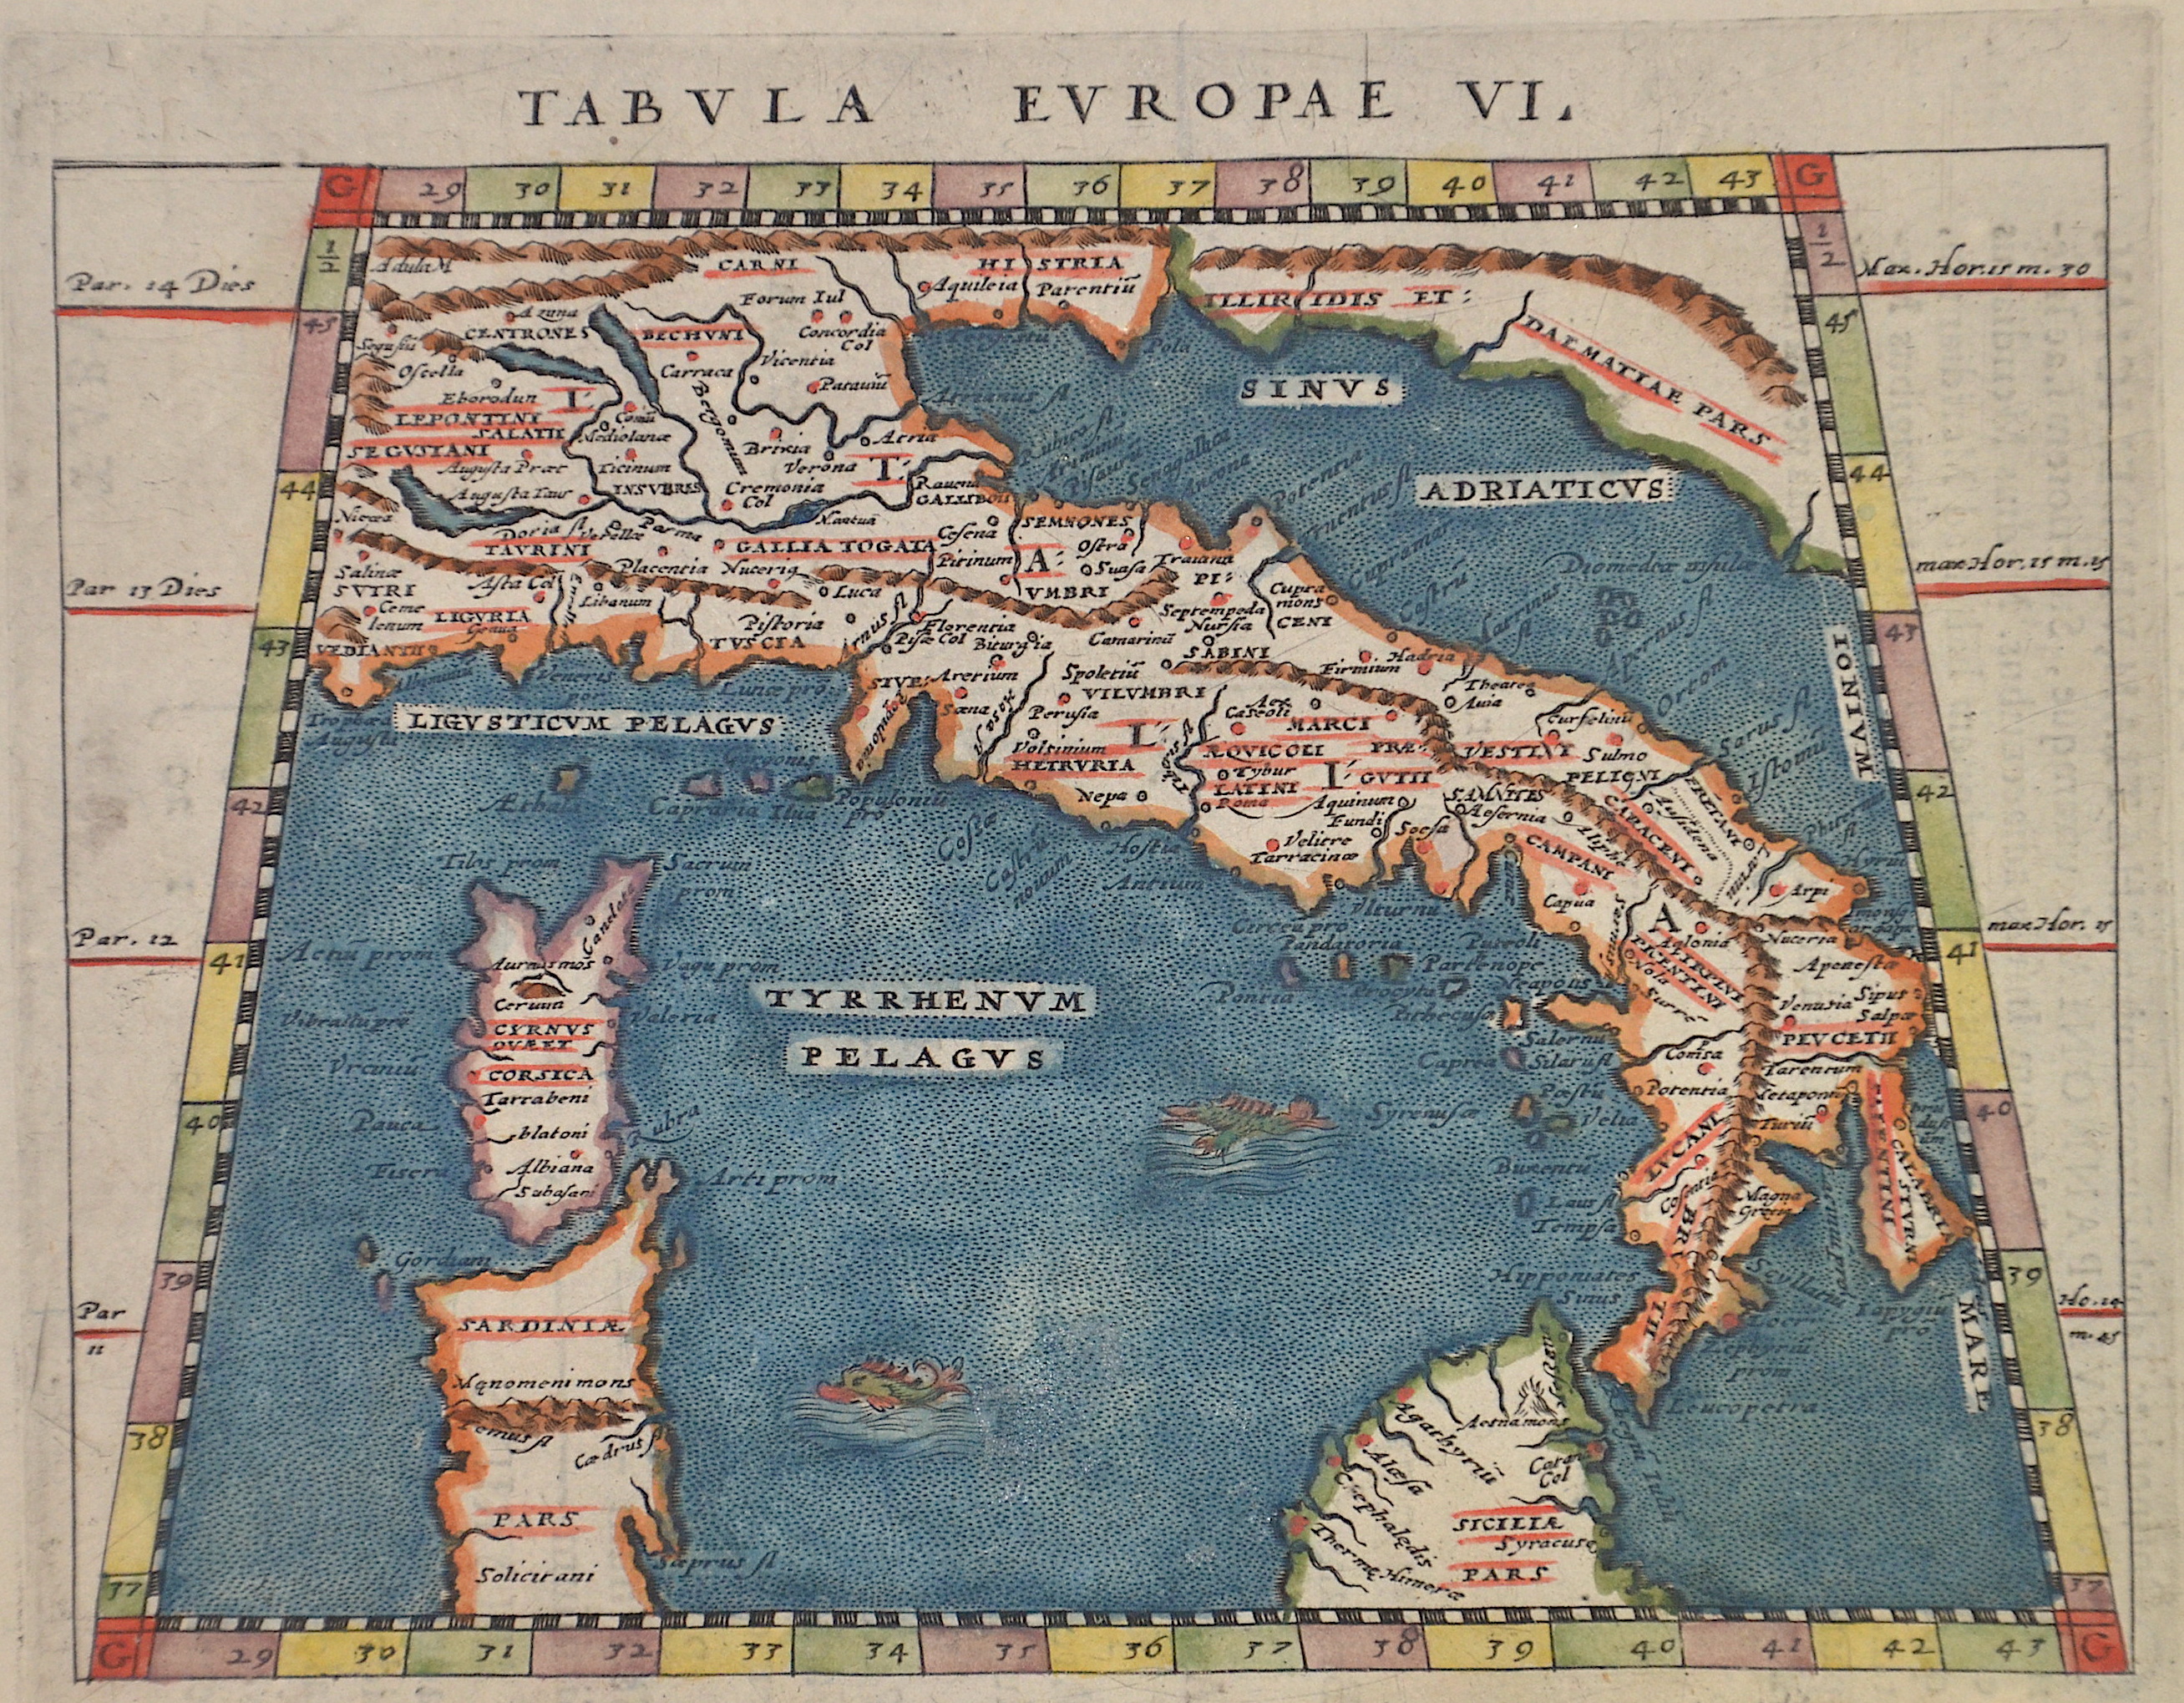 Magini G. Antonio Tabula Europae VI.